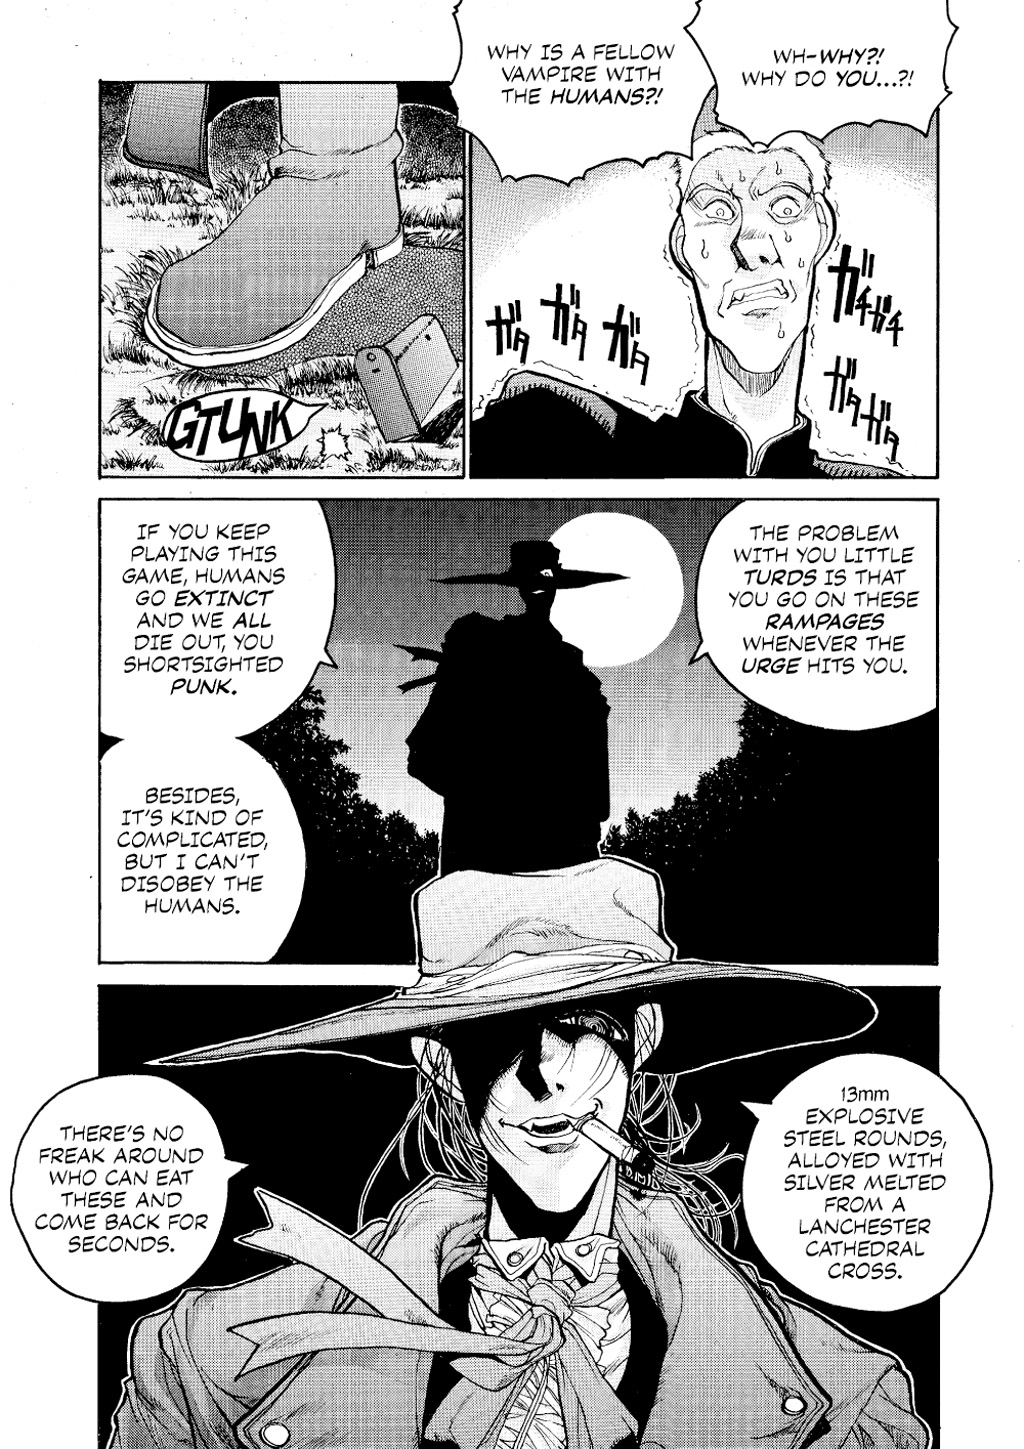 Alucard explains his motivations in Hellsing Ch. 1 "Vampire Hunter" (1998), Shōnen Gahōsha